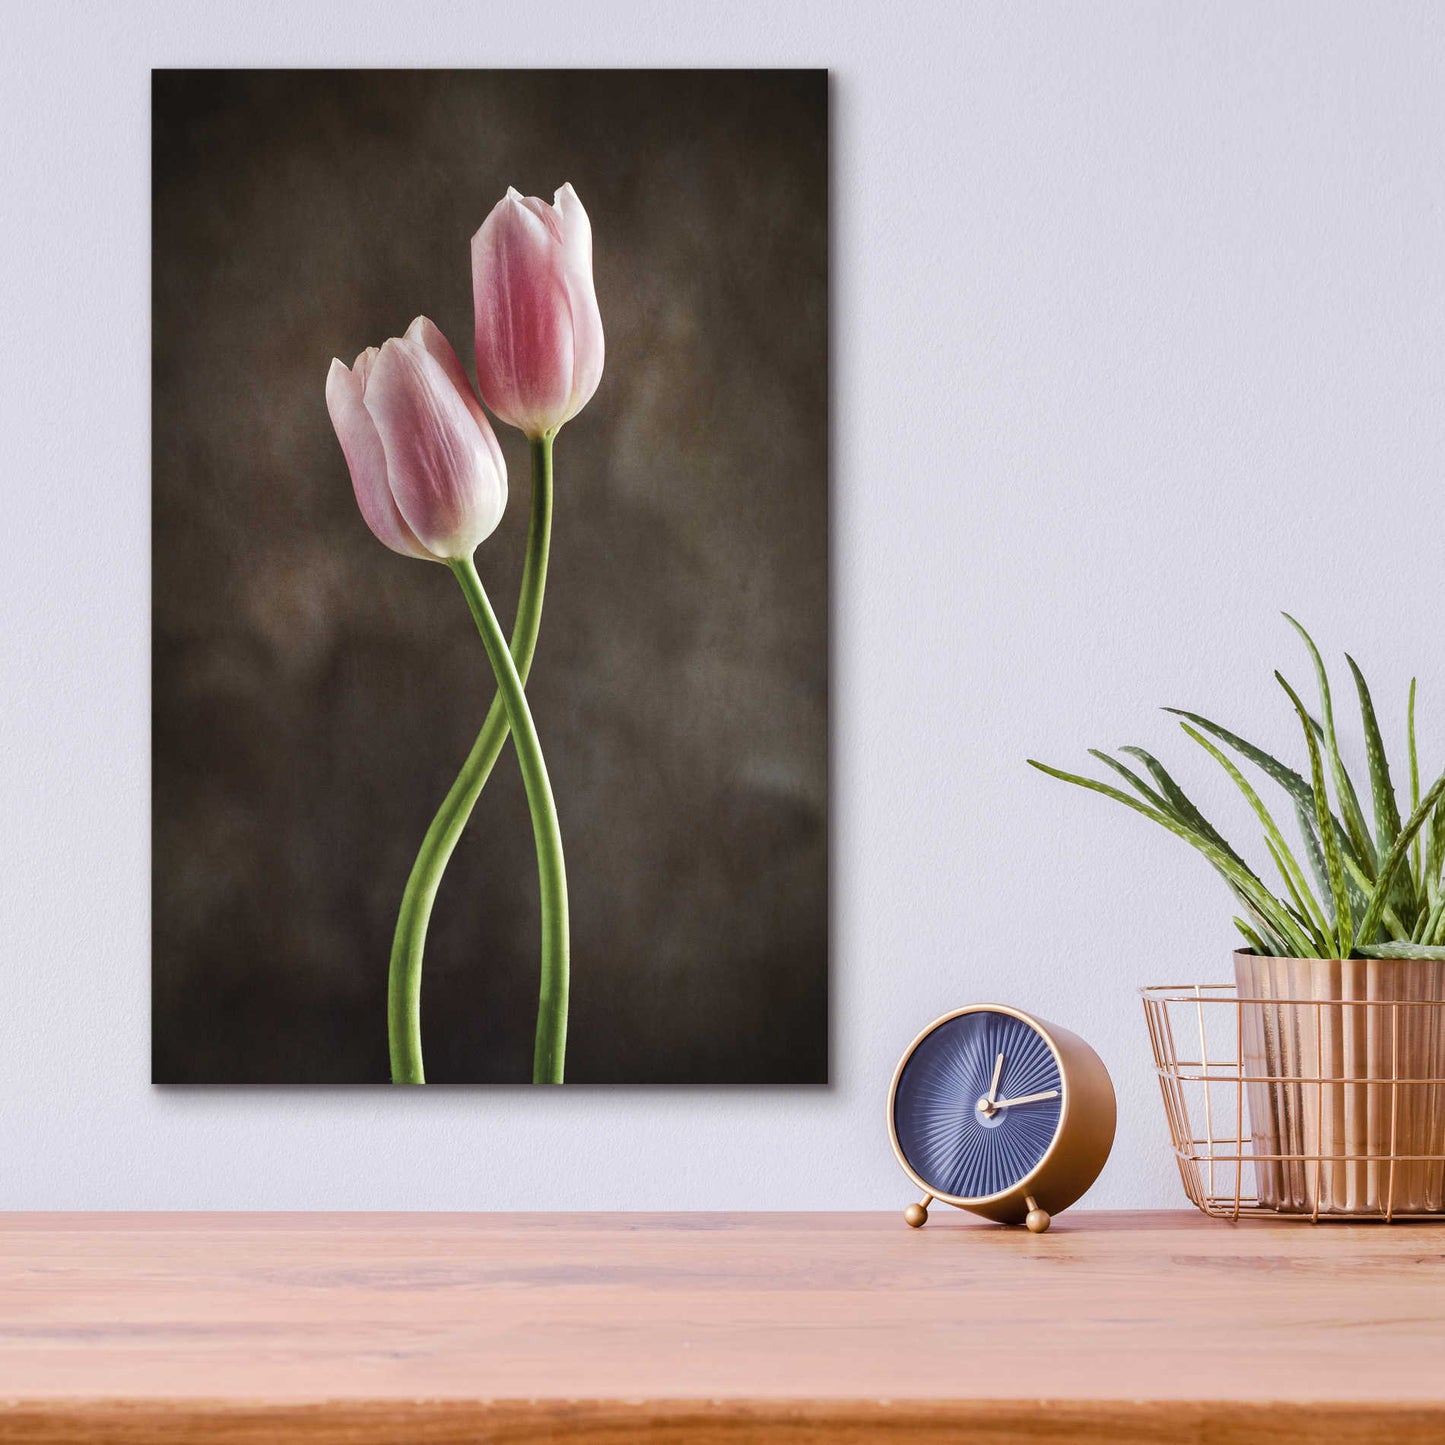 Epic Art 'Spring Tulips V' by Debra Van Swearingen, Acrylic Glass Wall Art,12x16